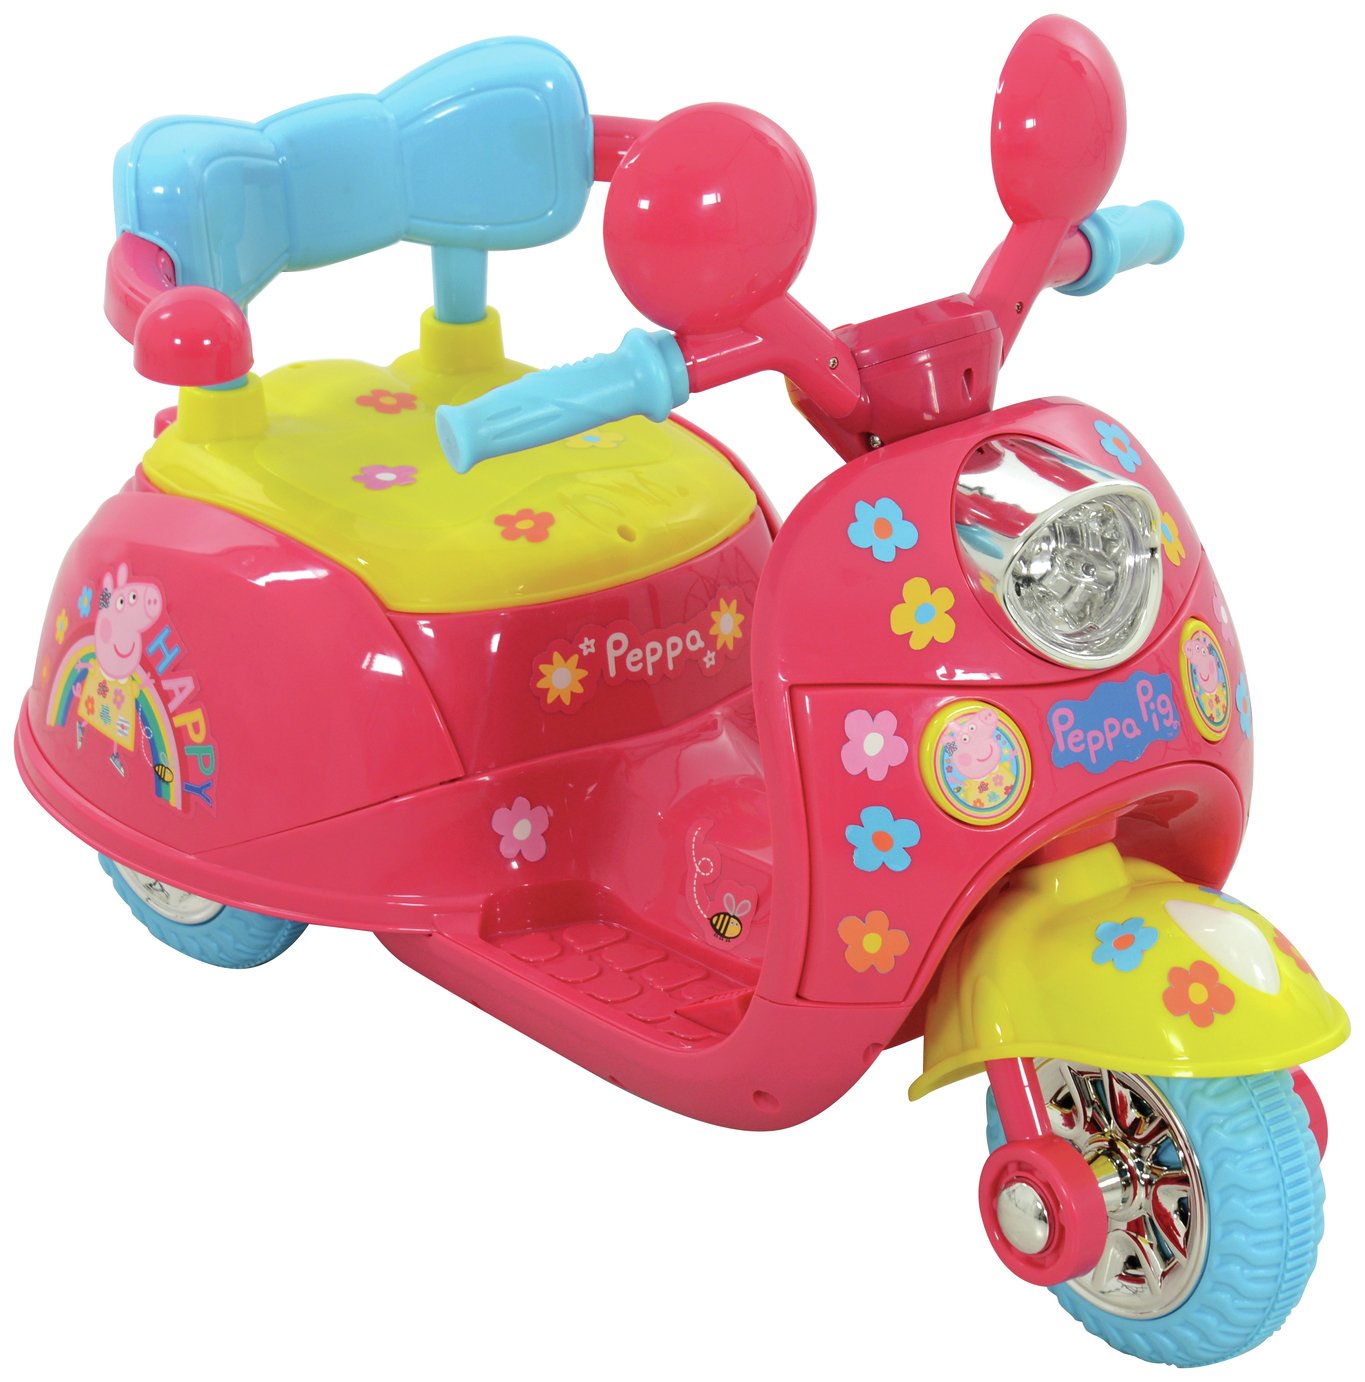 argos electric ride on toys